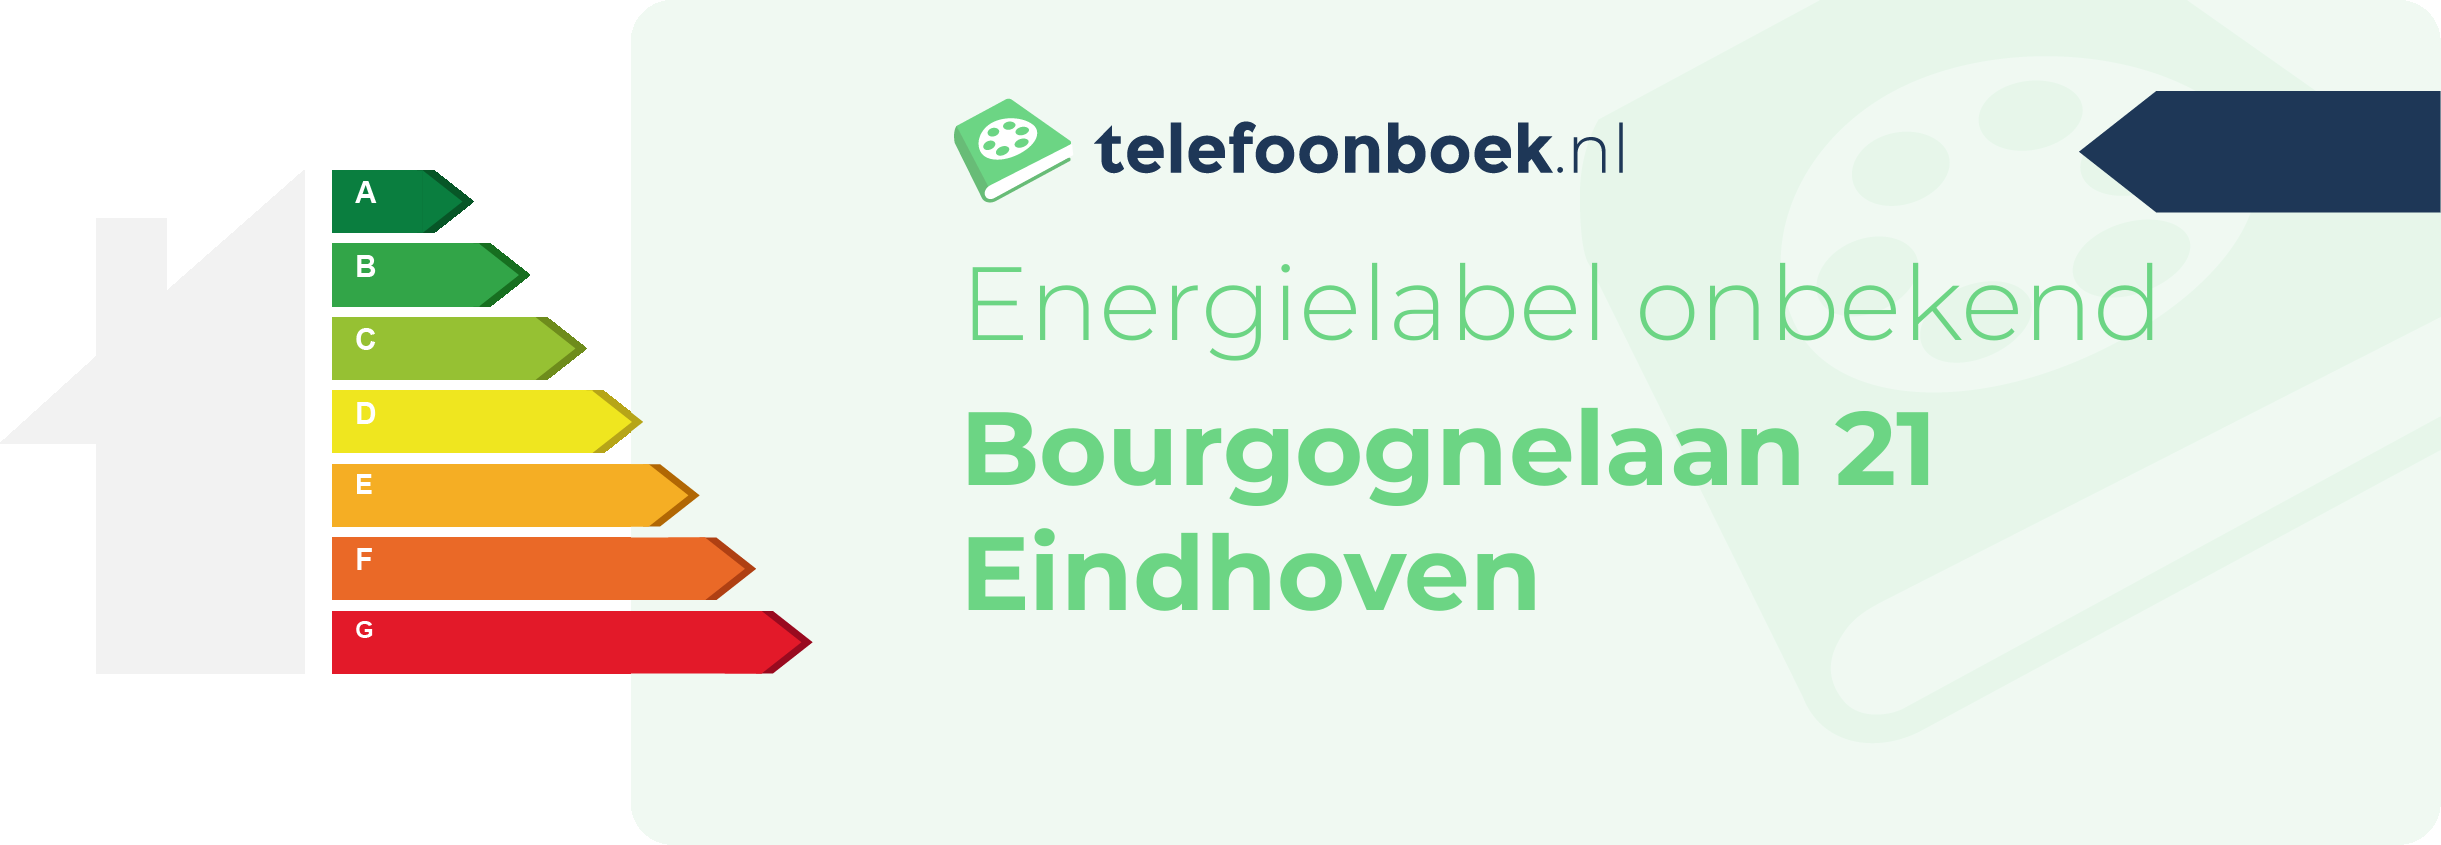 Energielabel Bourgognelaan 21 Eindhoven